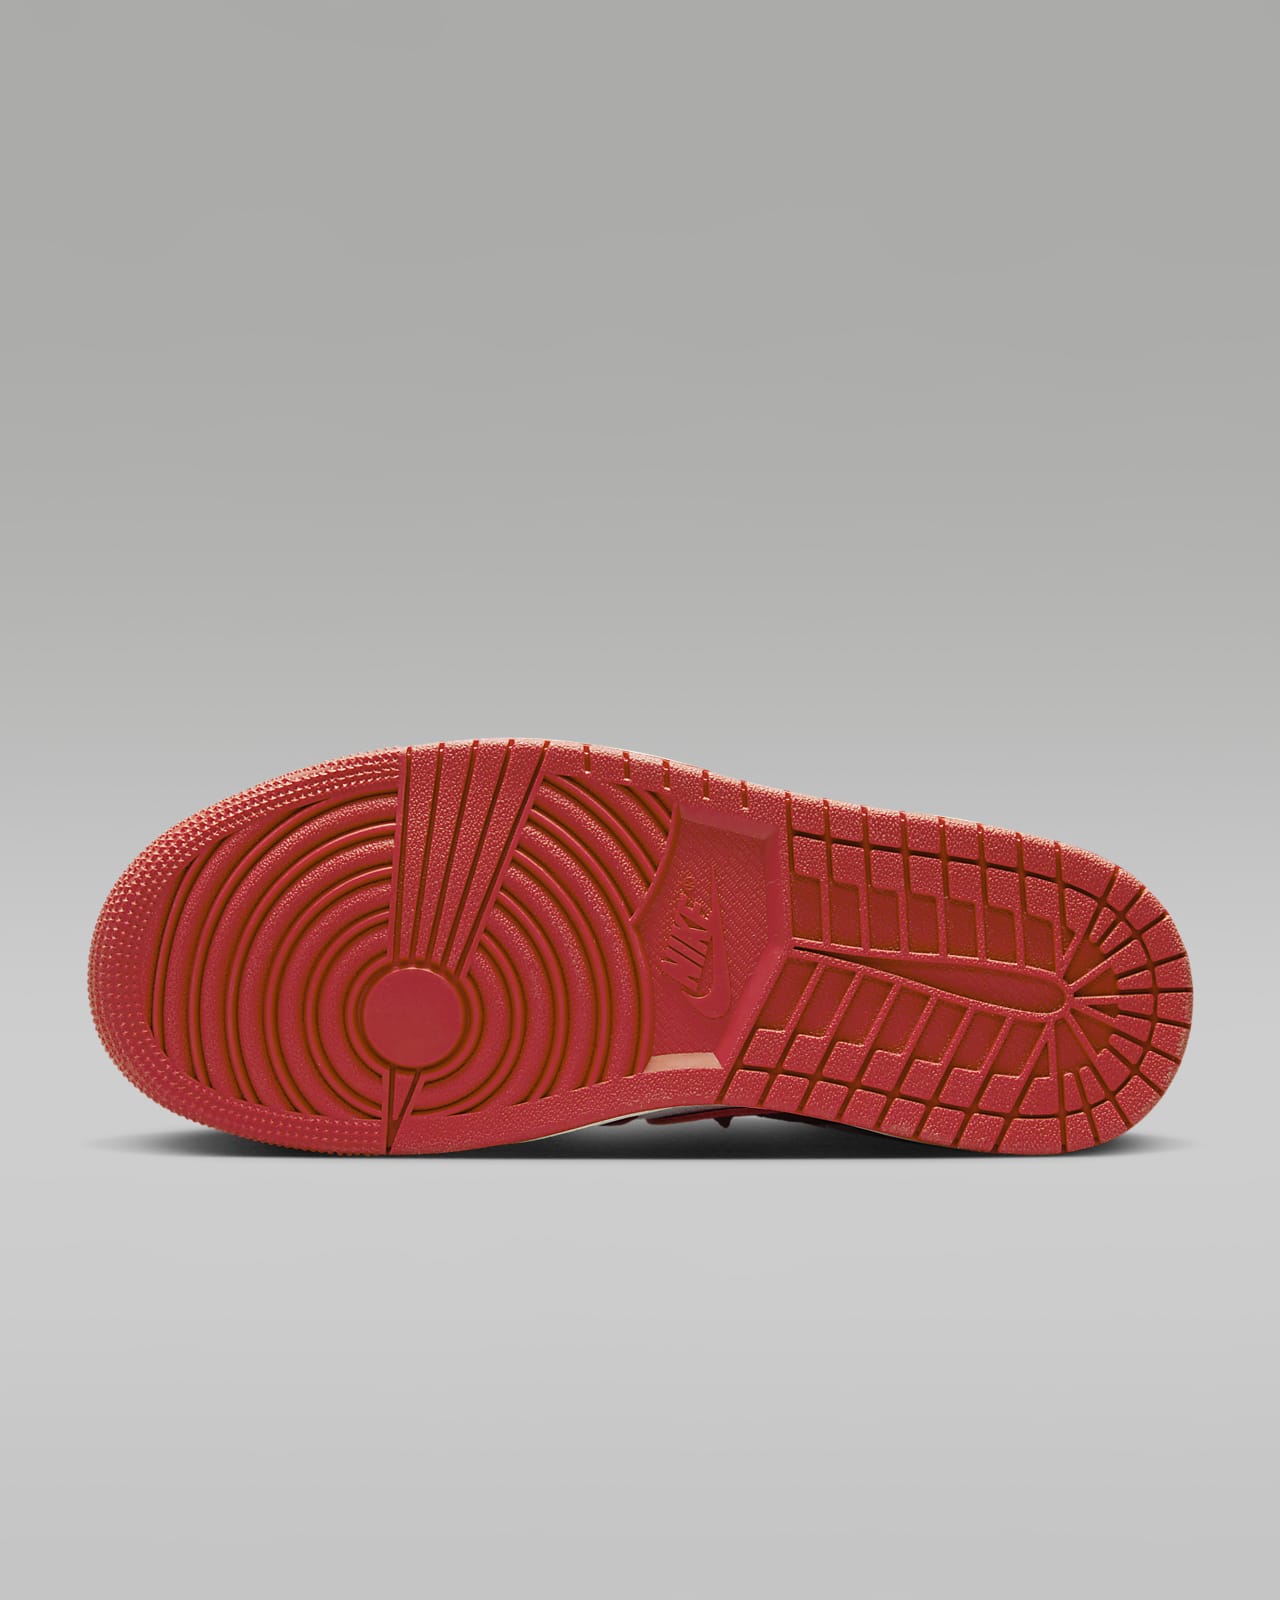 Zapatillas Tenis Mujer Nike Jordan 1 Retro High Importadas 40% de Descuento